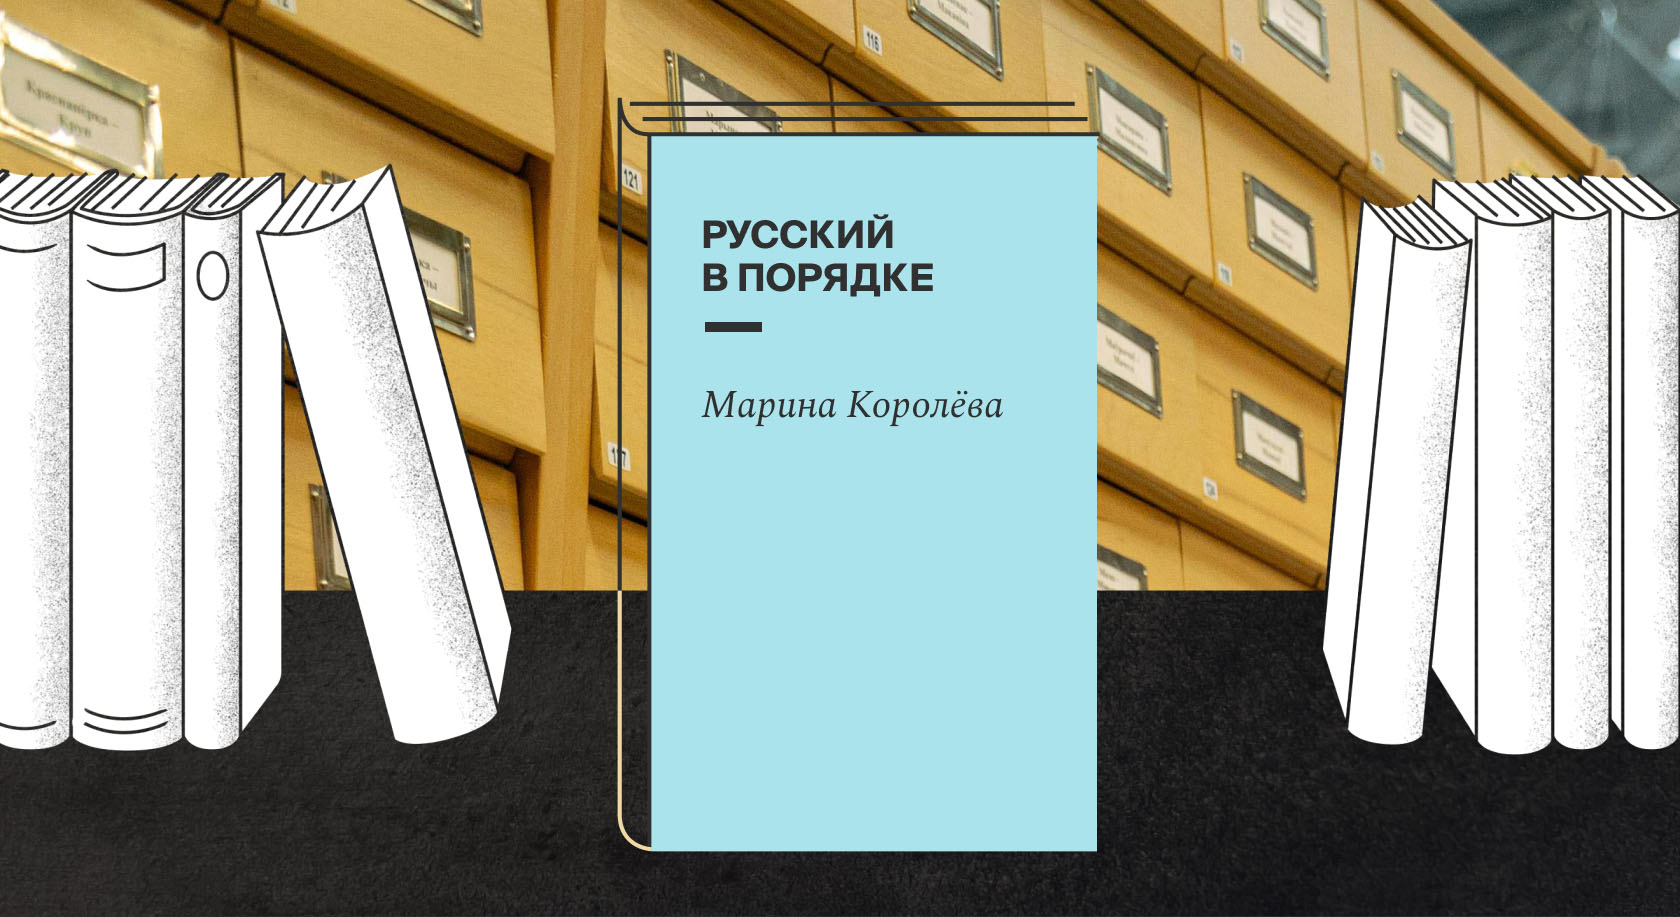 Карточки Марины Королёвой вышли в виде книги «Русский в порядке»